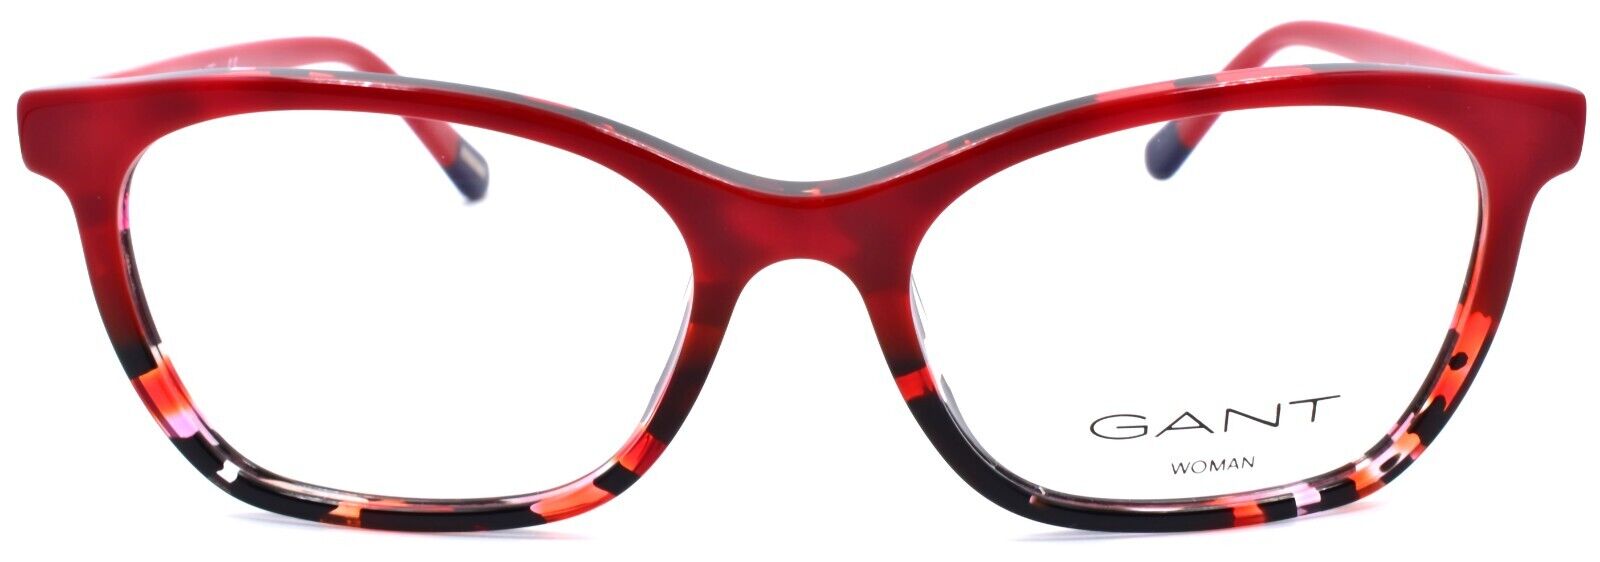 2-GANT GA4095 054 Women's Eyeglasses Frames 53-17-140 Red Havana-889214107084-IKSpecs